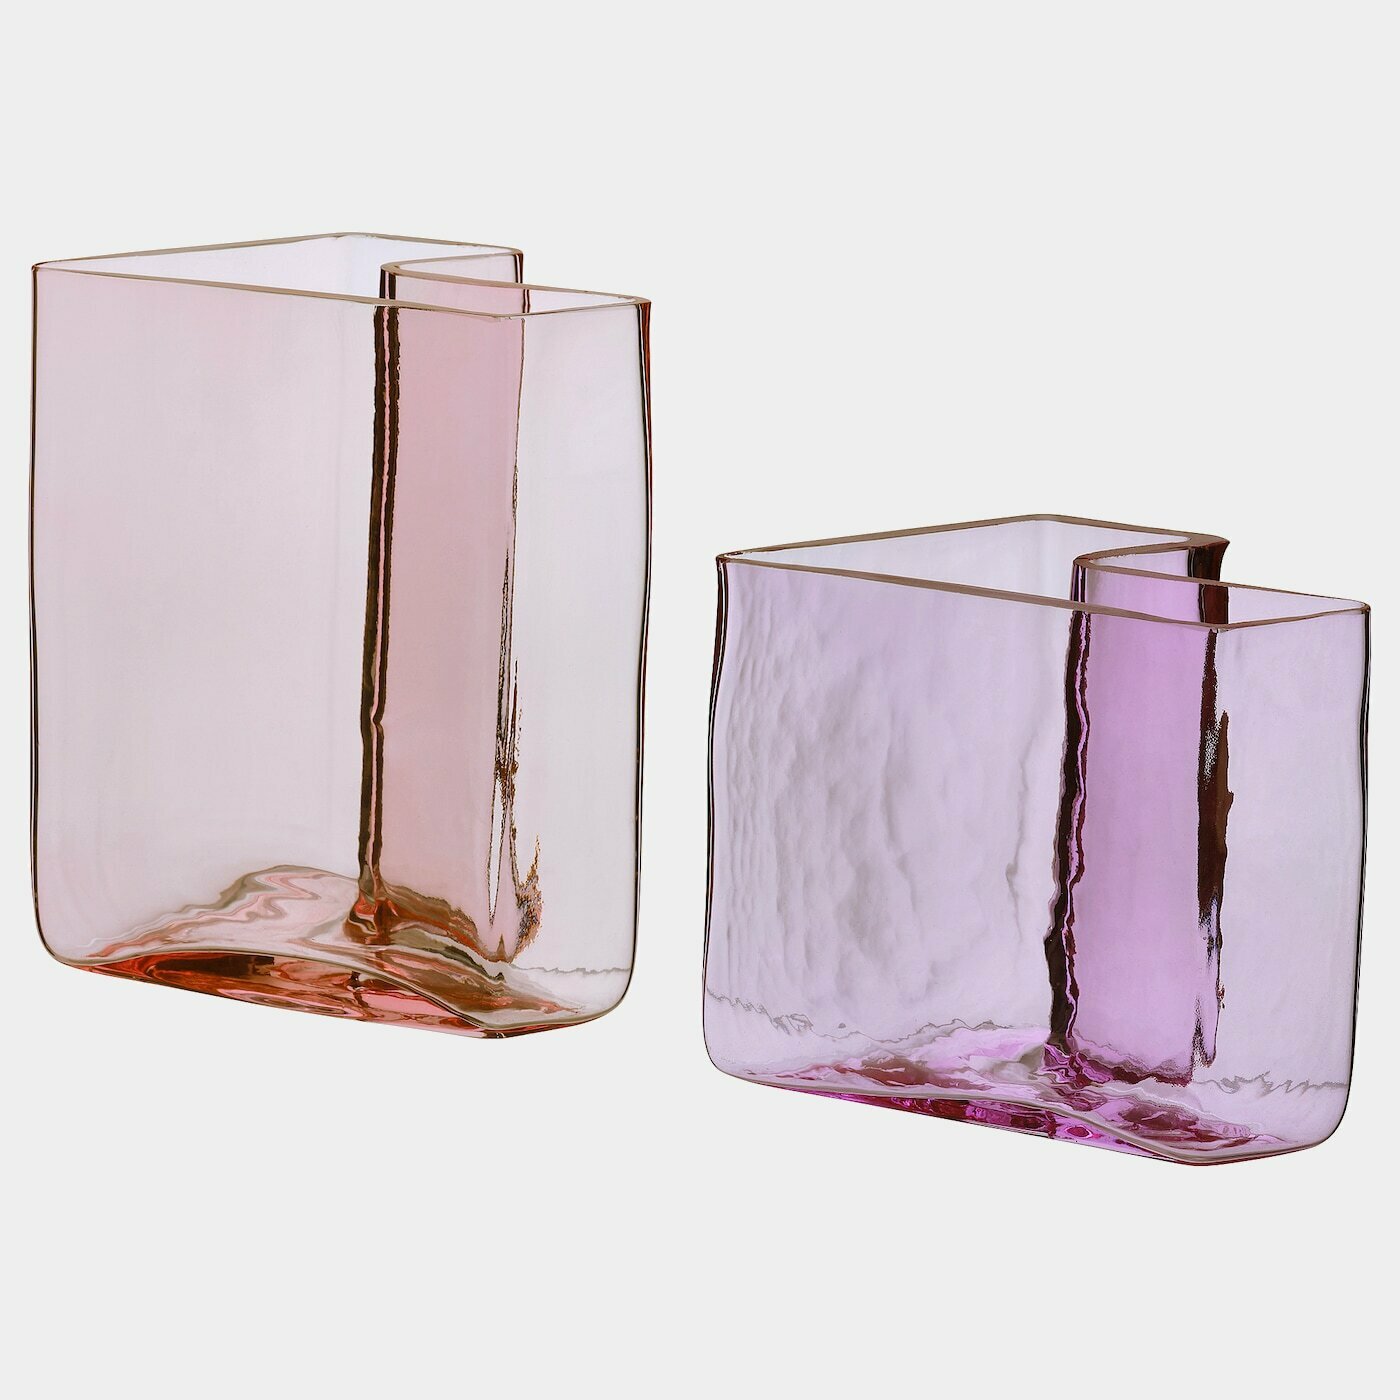 KARISMATISK Vase 2er-Set  -  - Möbel Ideen für dein Zuhause von Home Trends. Möbel Trends von Social Media Influencer für dein Skandi Zuhause.